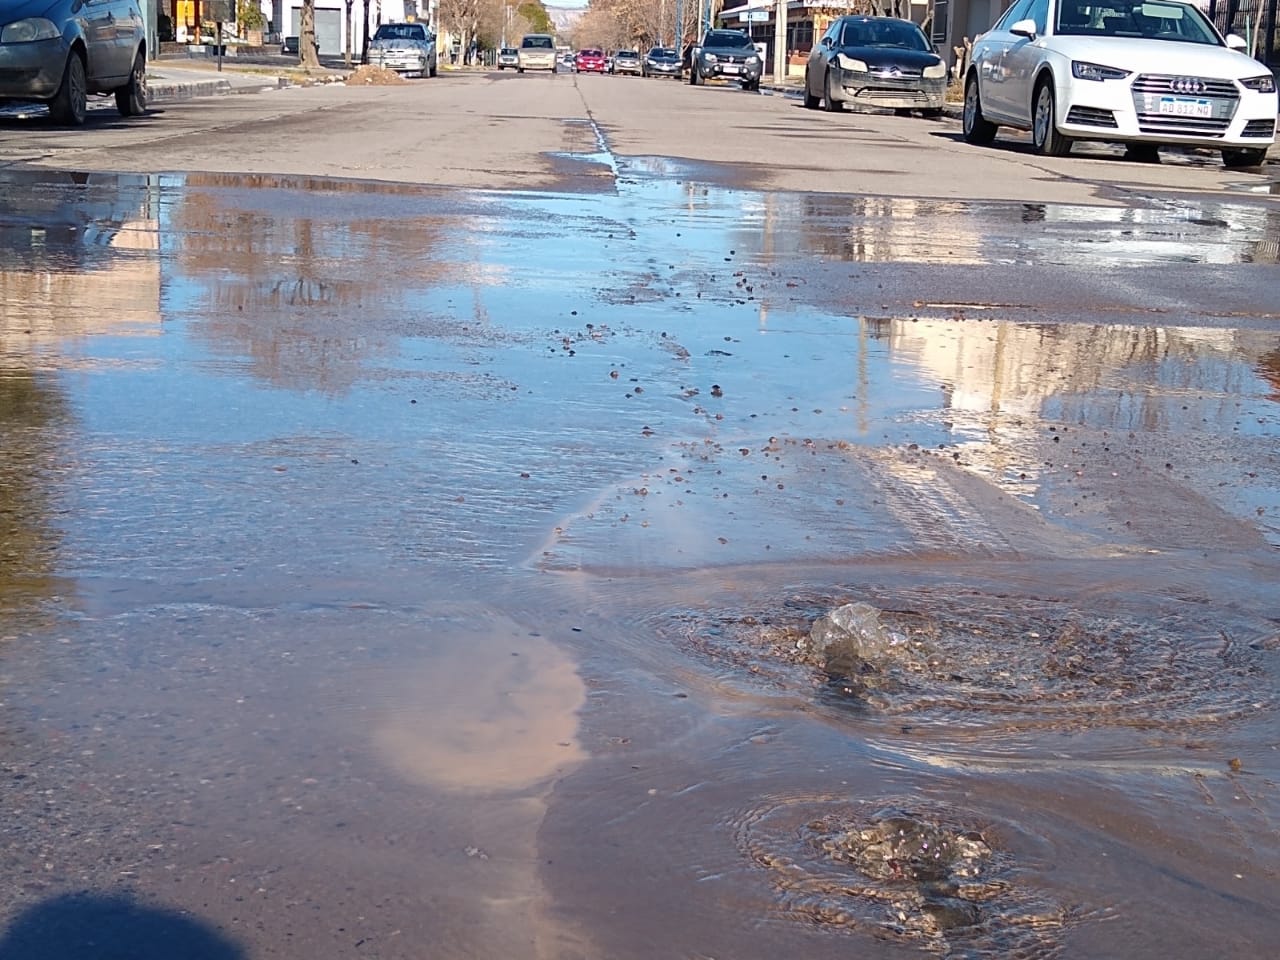 La presión del agua rompió el asfalto y ahora sale a borbotones. (foto: Luis Leiva)